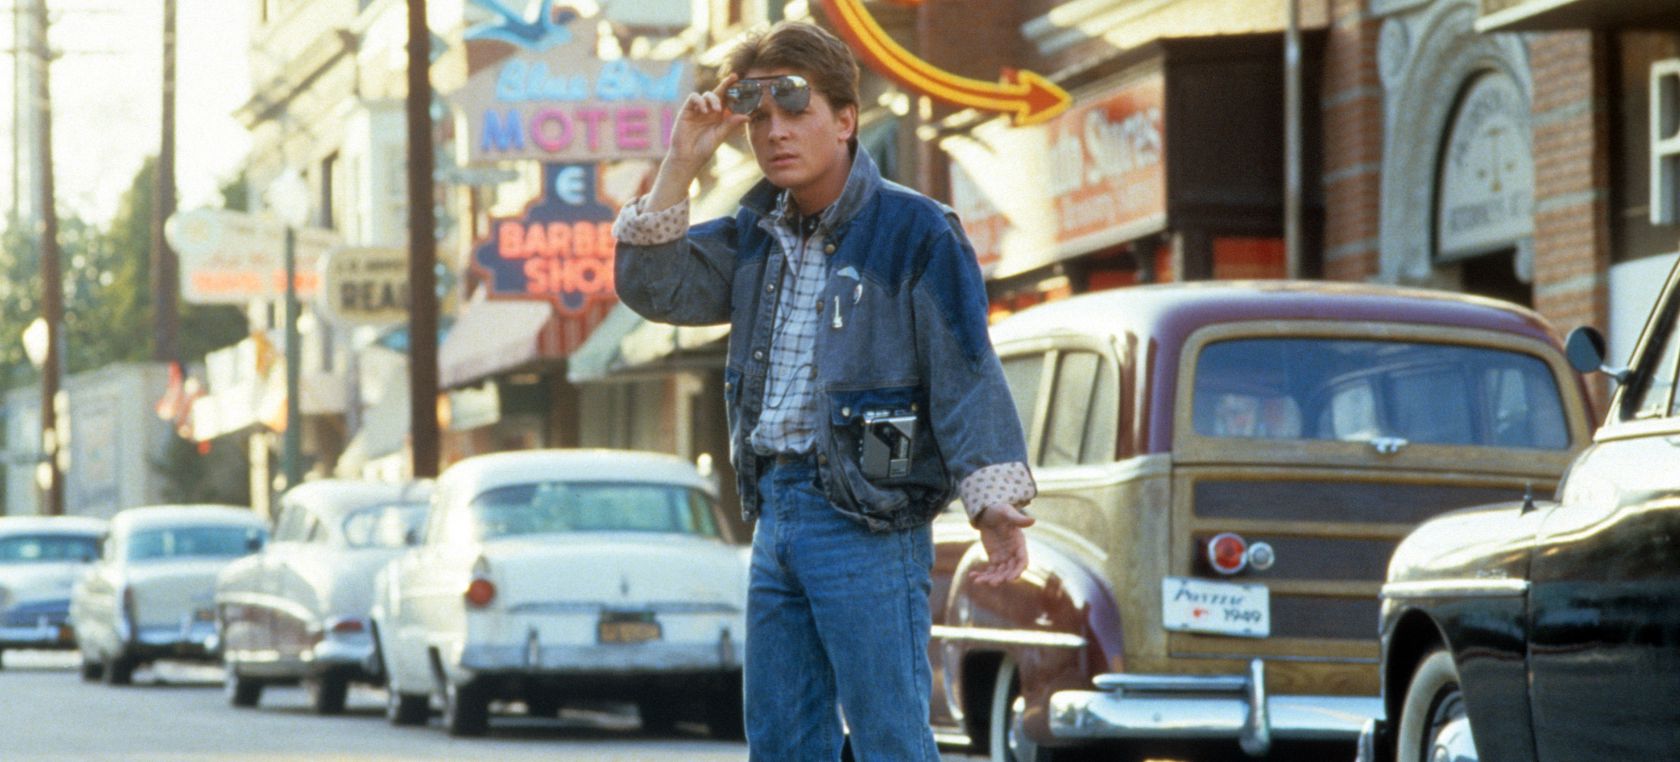 Hace 35 años, Marty McFly viajó al pasado por primera vez en ‘Regreso al futuro’